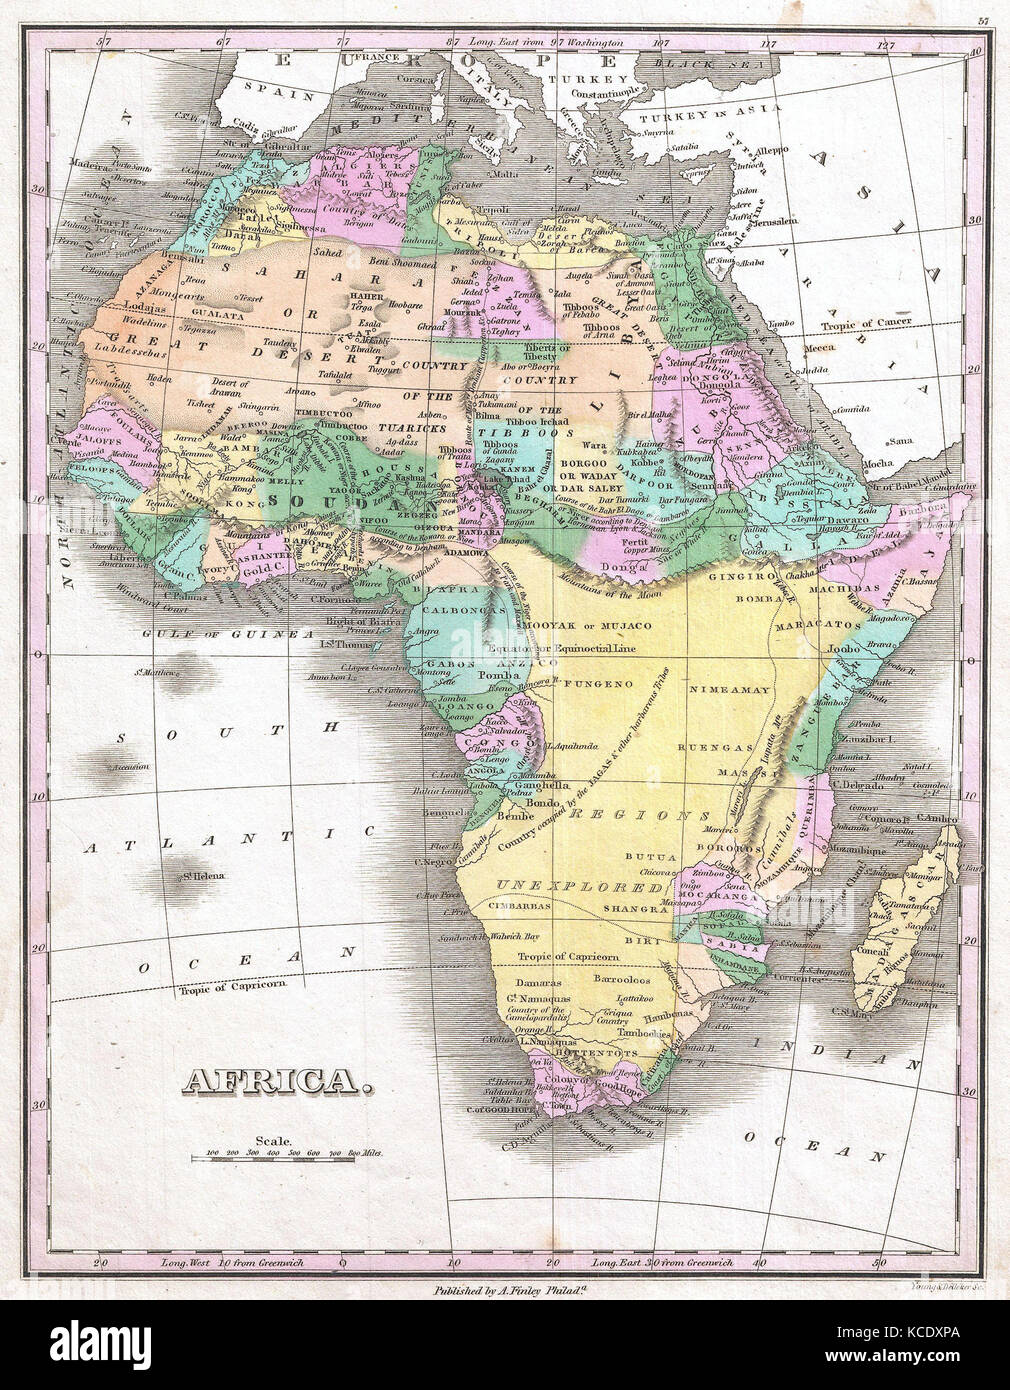 1827, Finley Karte von Afrika, Anthony Finley mapmaker der Vereinigten Staaten im 19. Jahrhundert Stockfoto